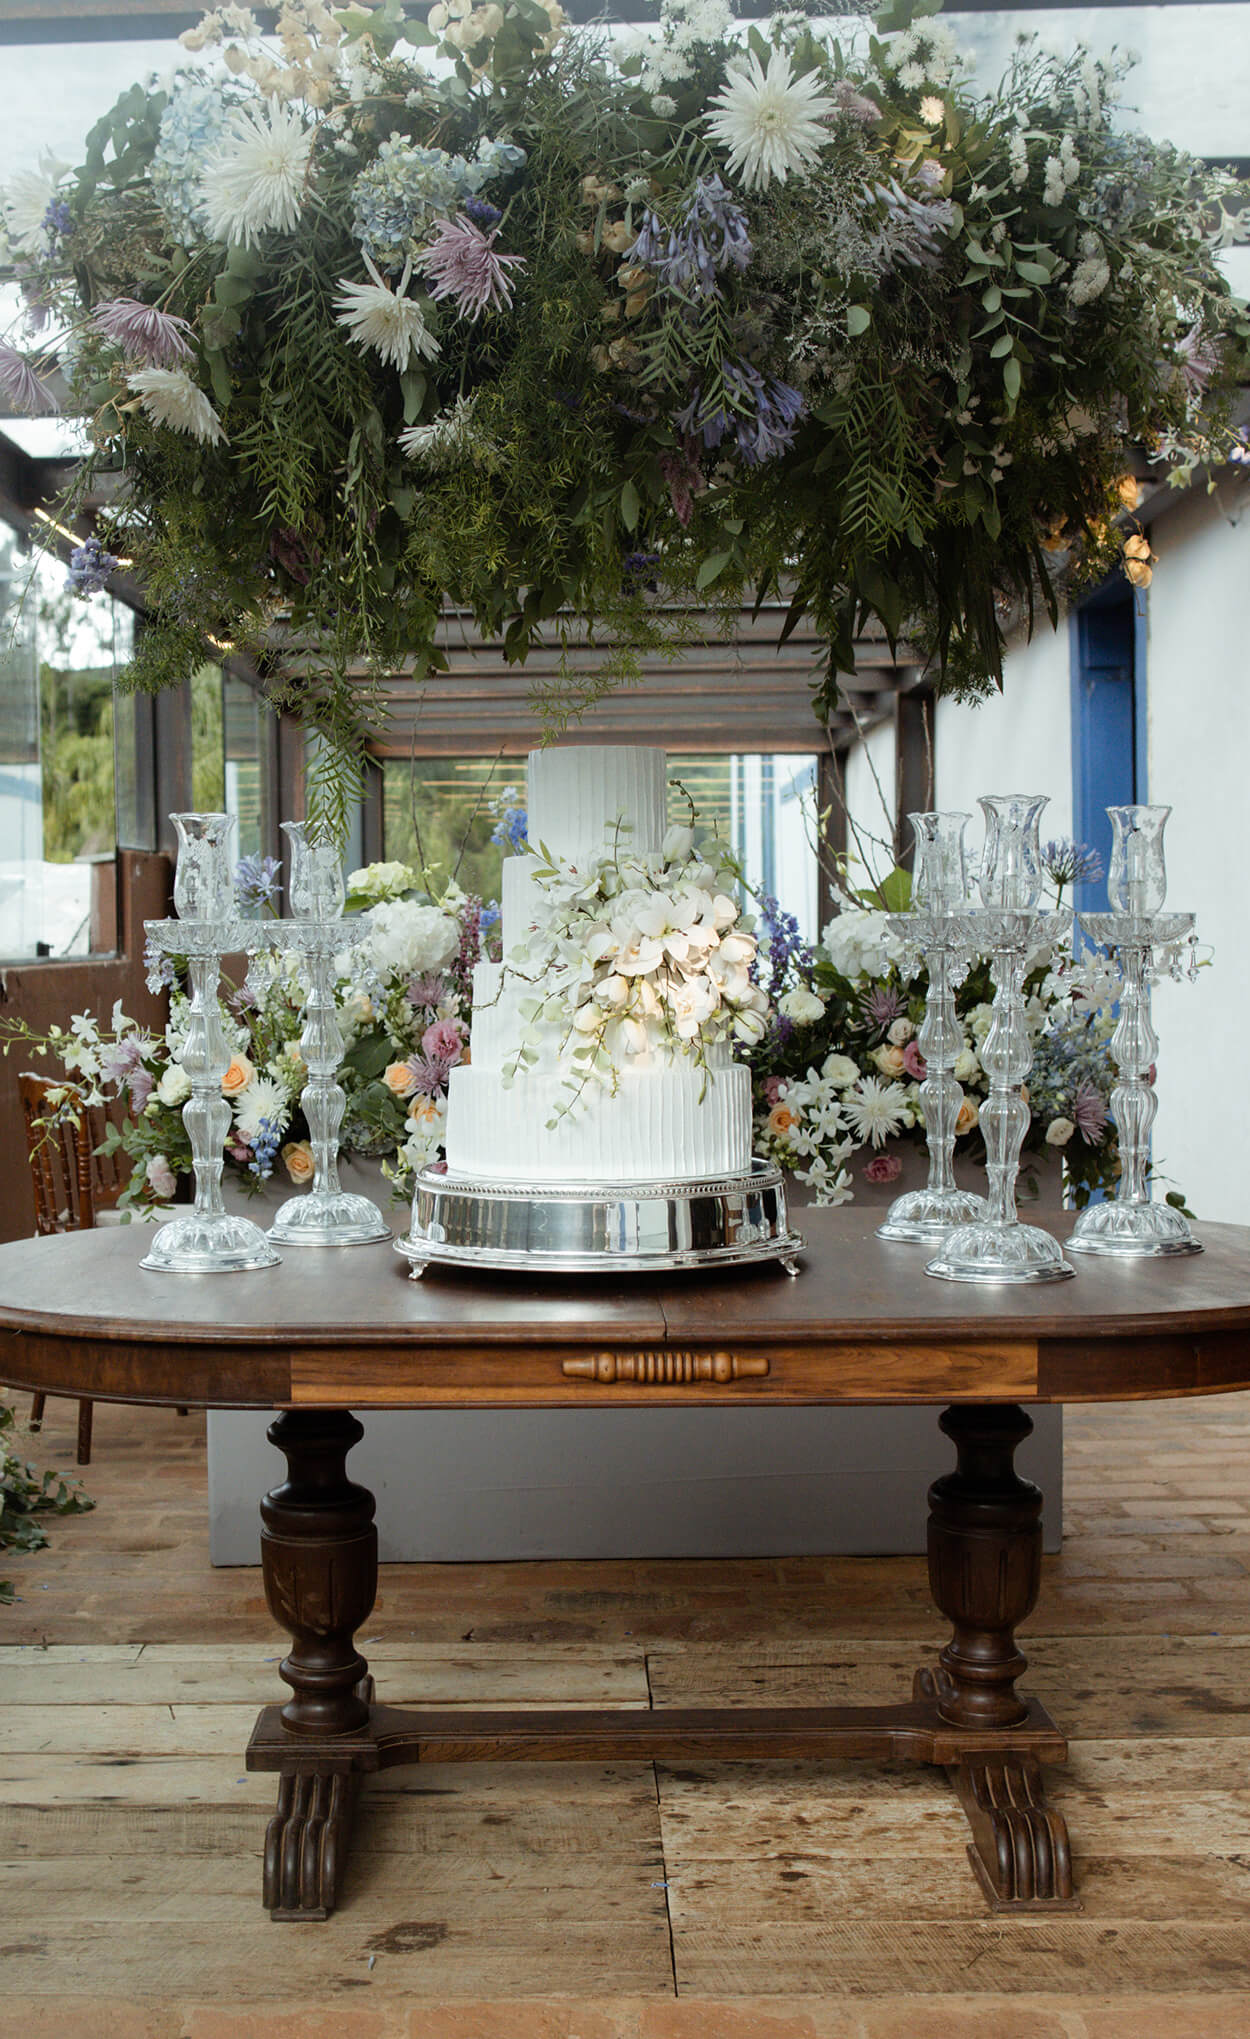 Mesa antiga com bolo de casamento com quatro andares com flores brancas